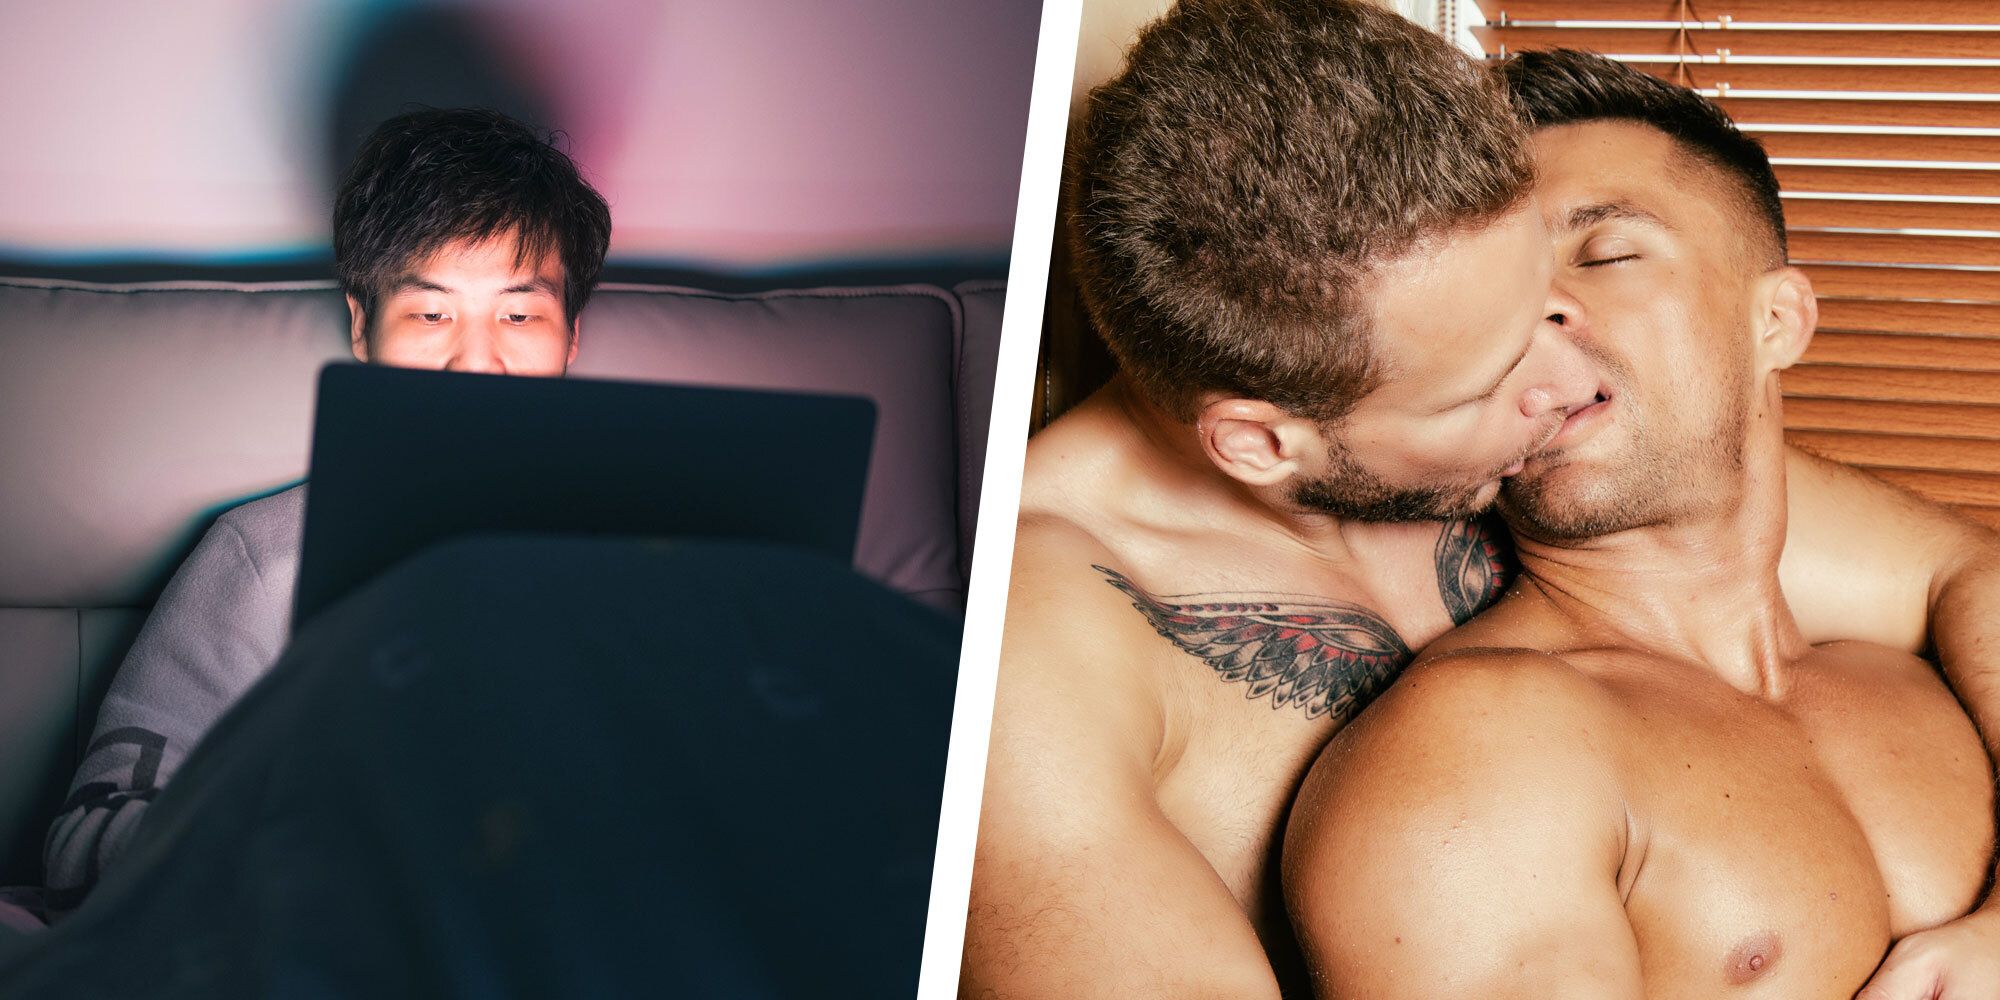 Qué pasa con los hombres heteros que ven porno gay